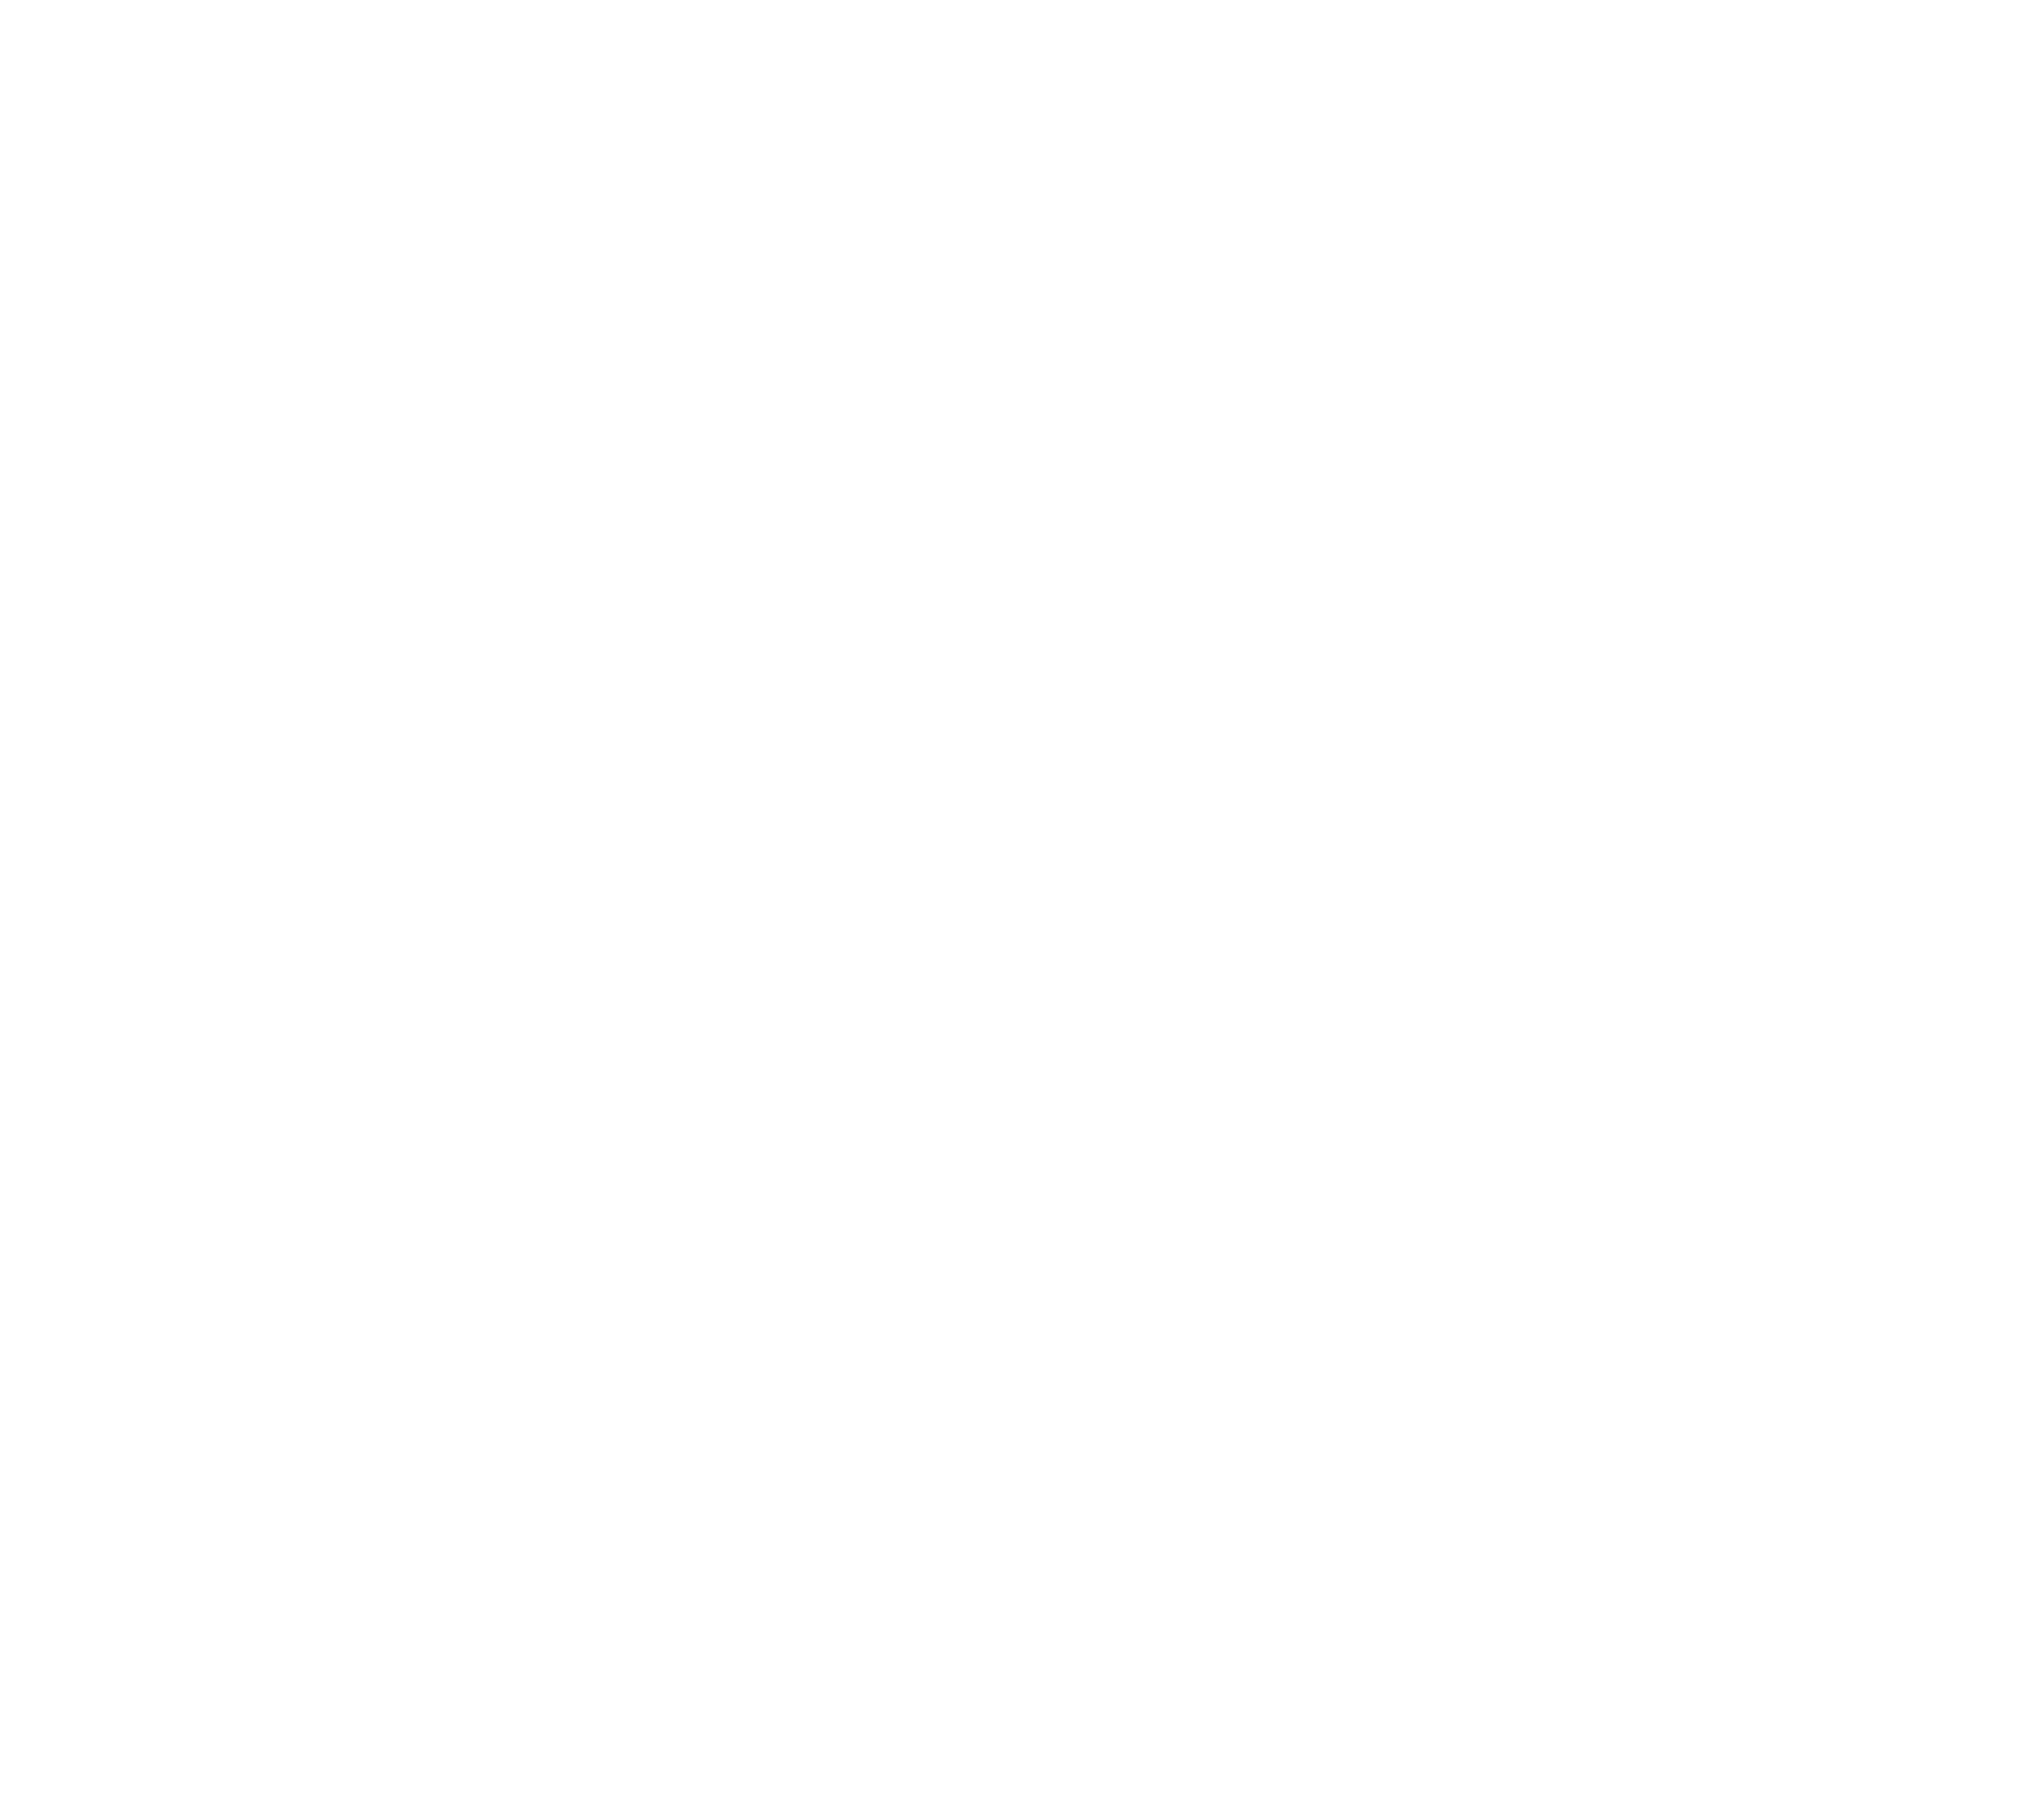 Women of Impact Academy